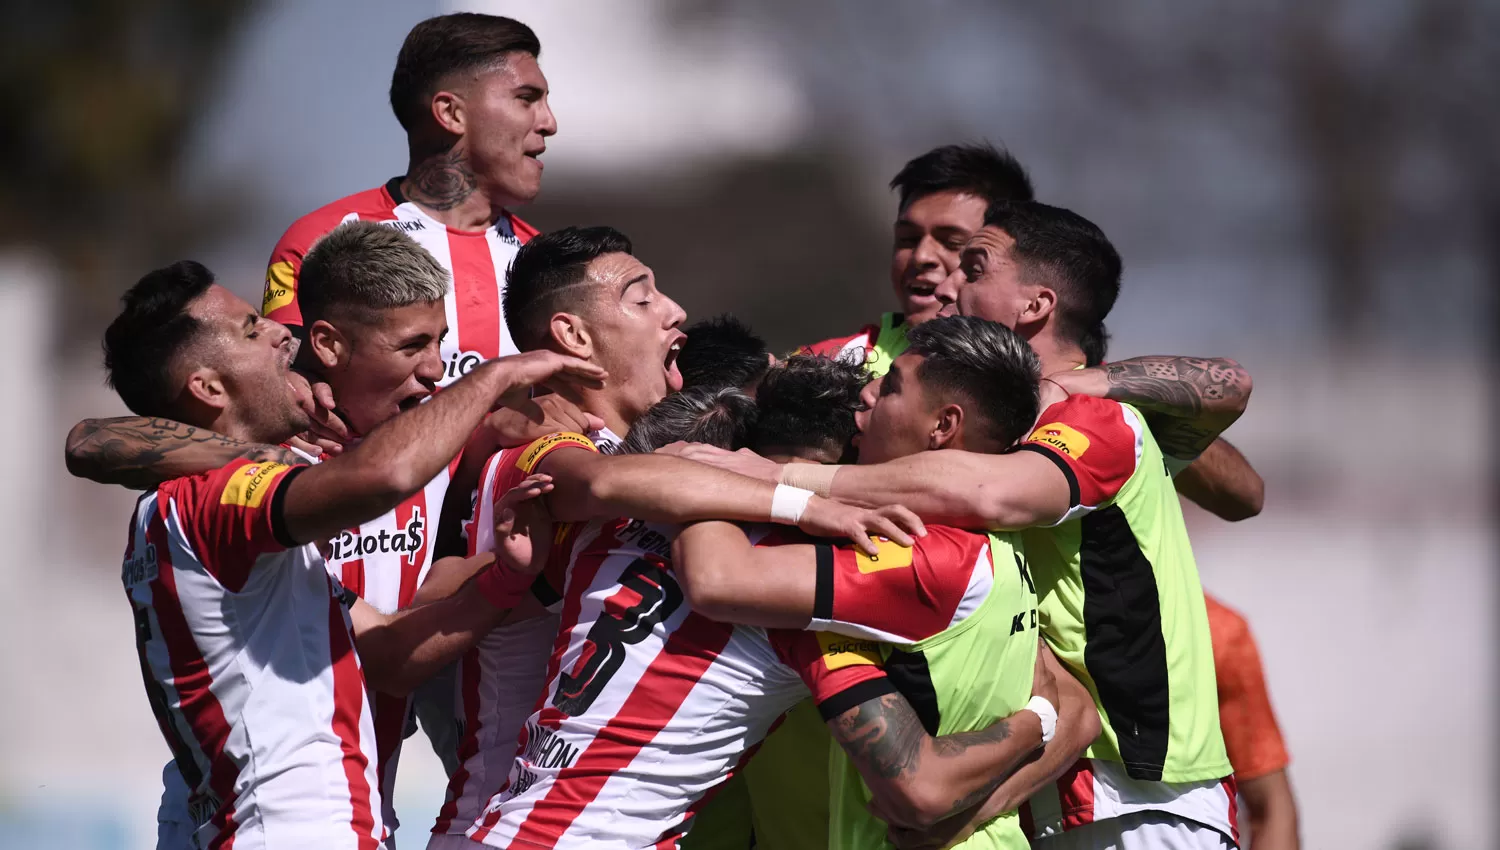 FESTEJO. Los jugadores de San Martín celebran el primer gol del partido, anotado por Diarte.